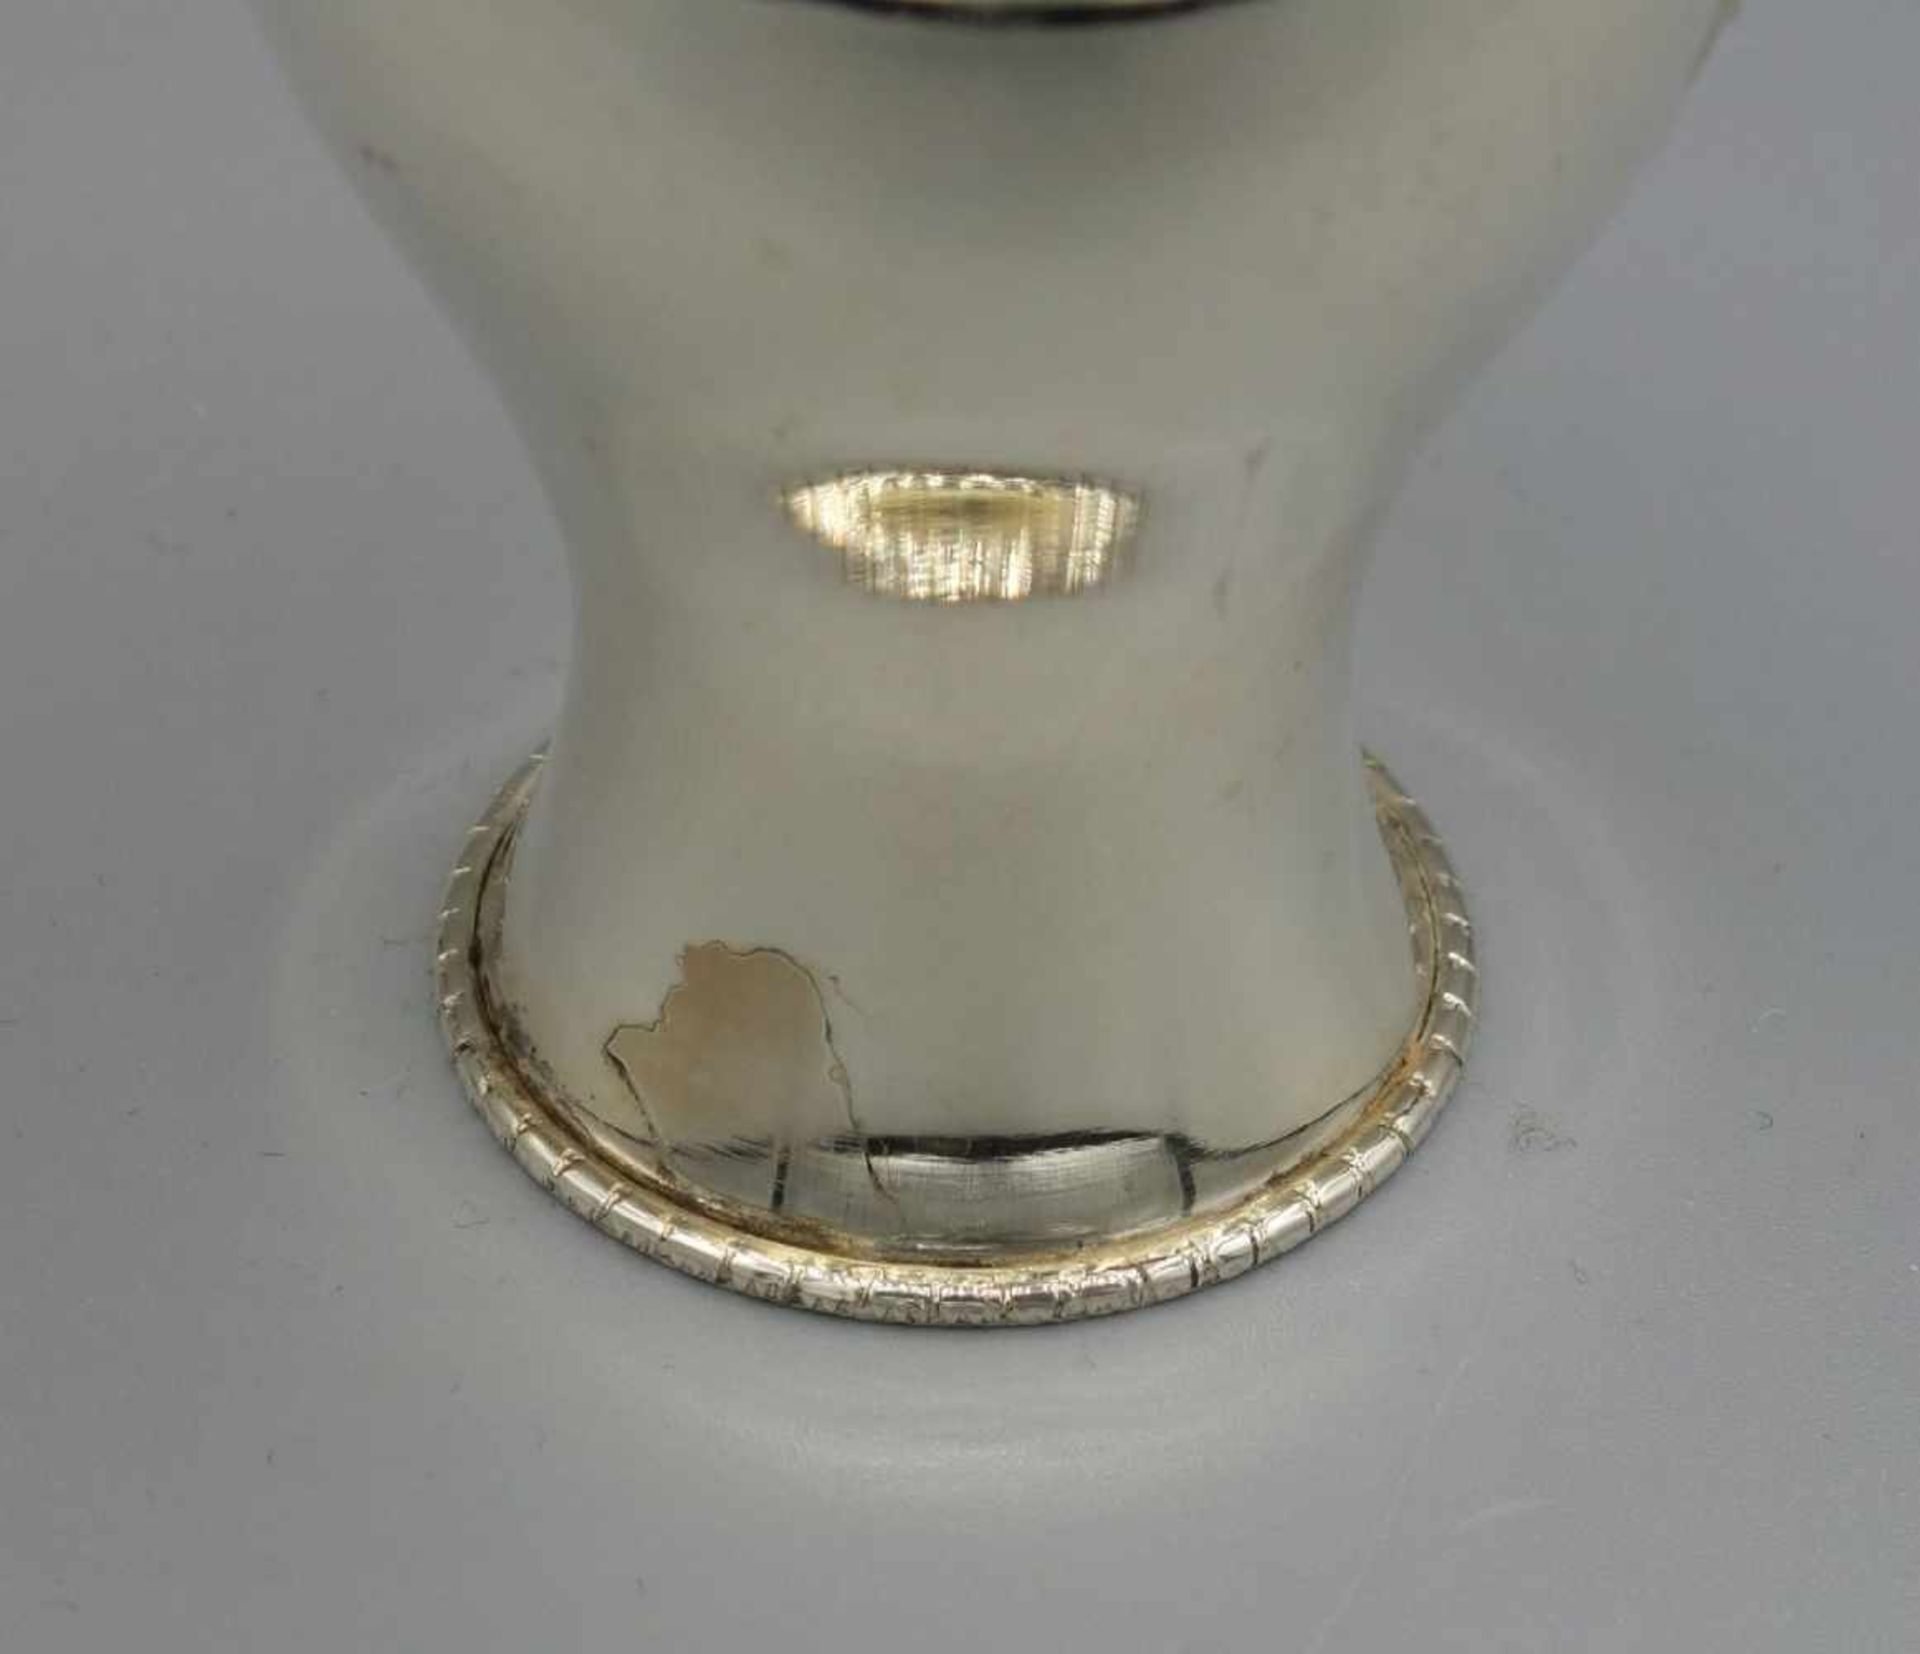 VASE, 925er Silber (32 g), gepunzt mit Feingehaltsangabe und Herstellermarke Hermann Bauer, - Bild 2 aus 3